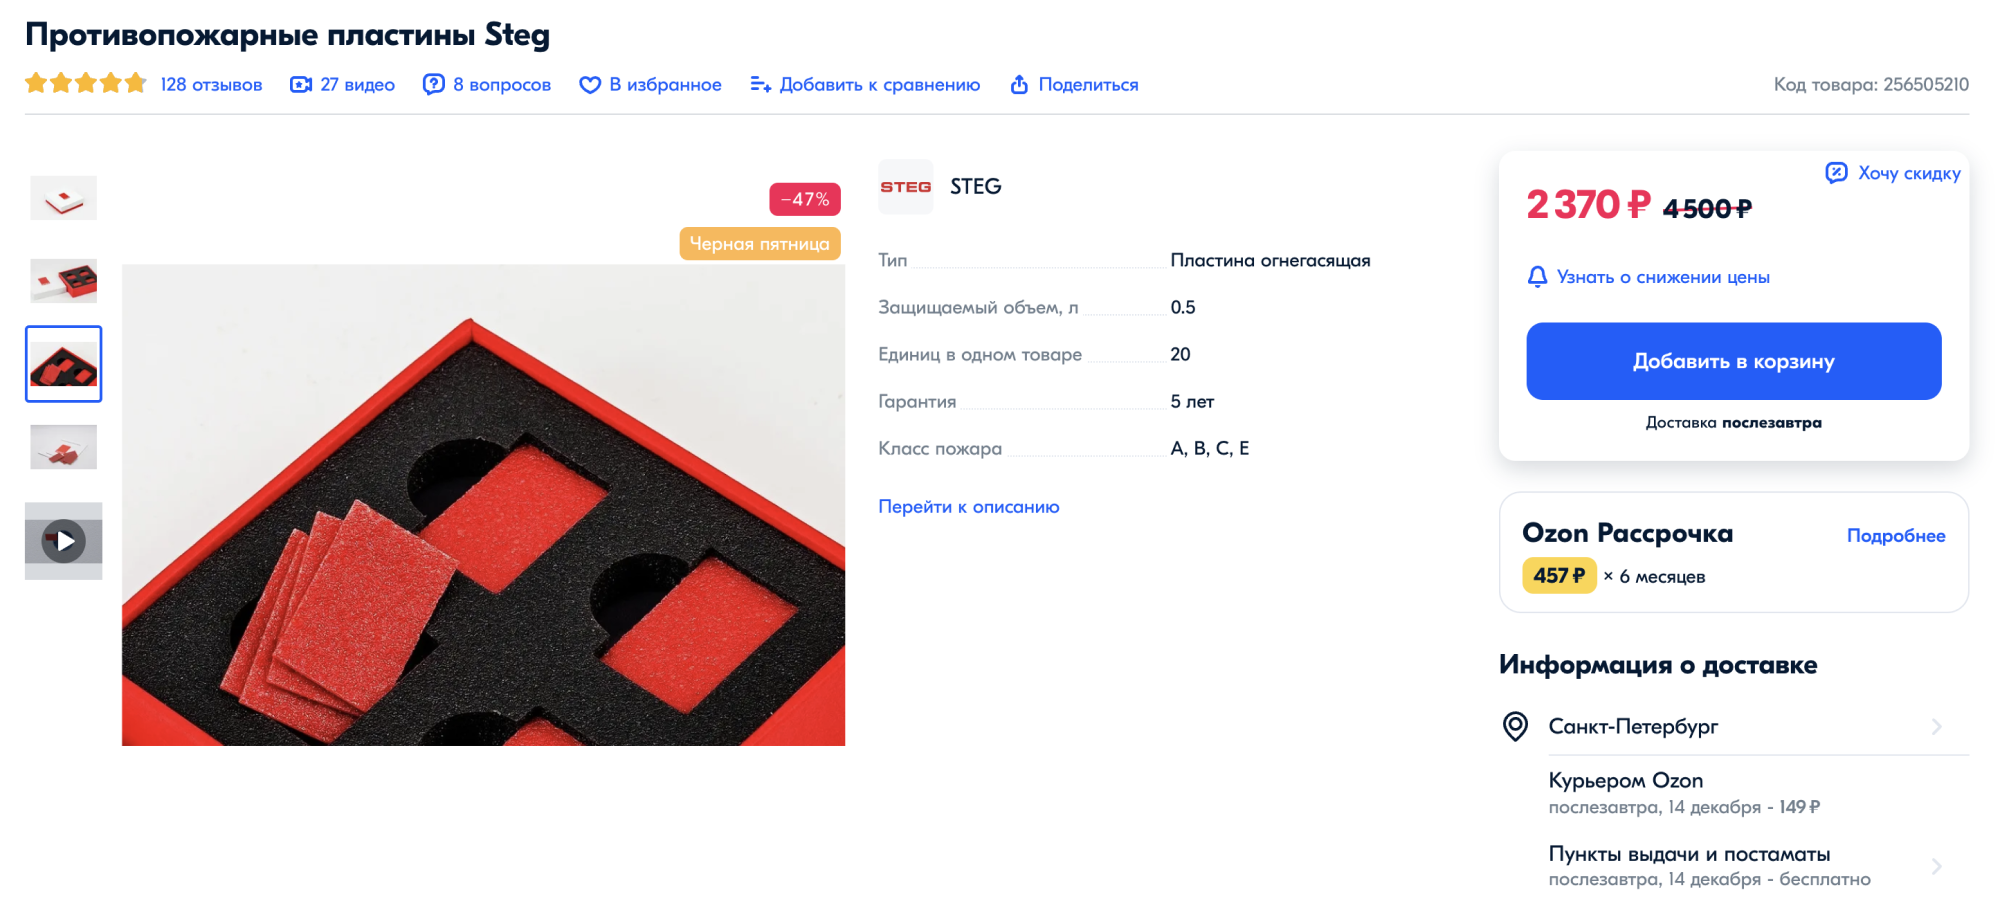 Цена набора из 20 противопожарных пластин — 2370 ₽. Источник: ozon.ru